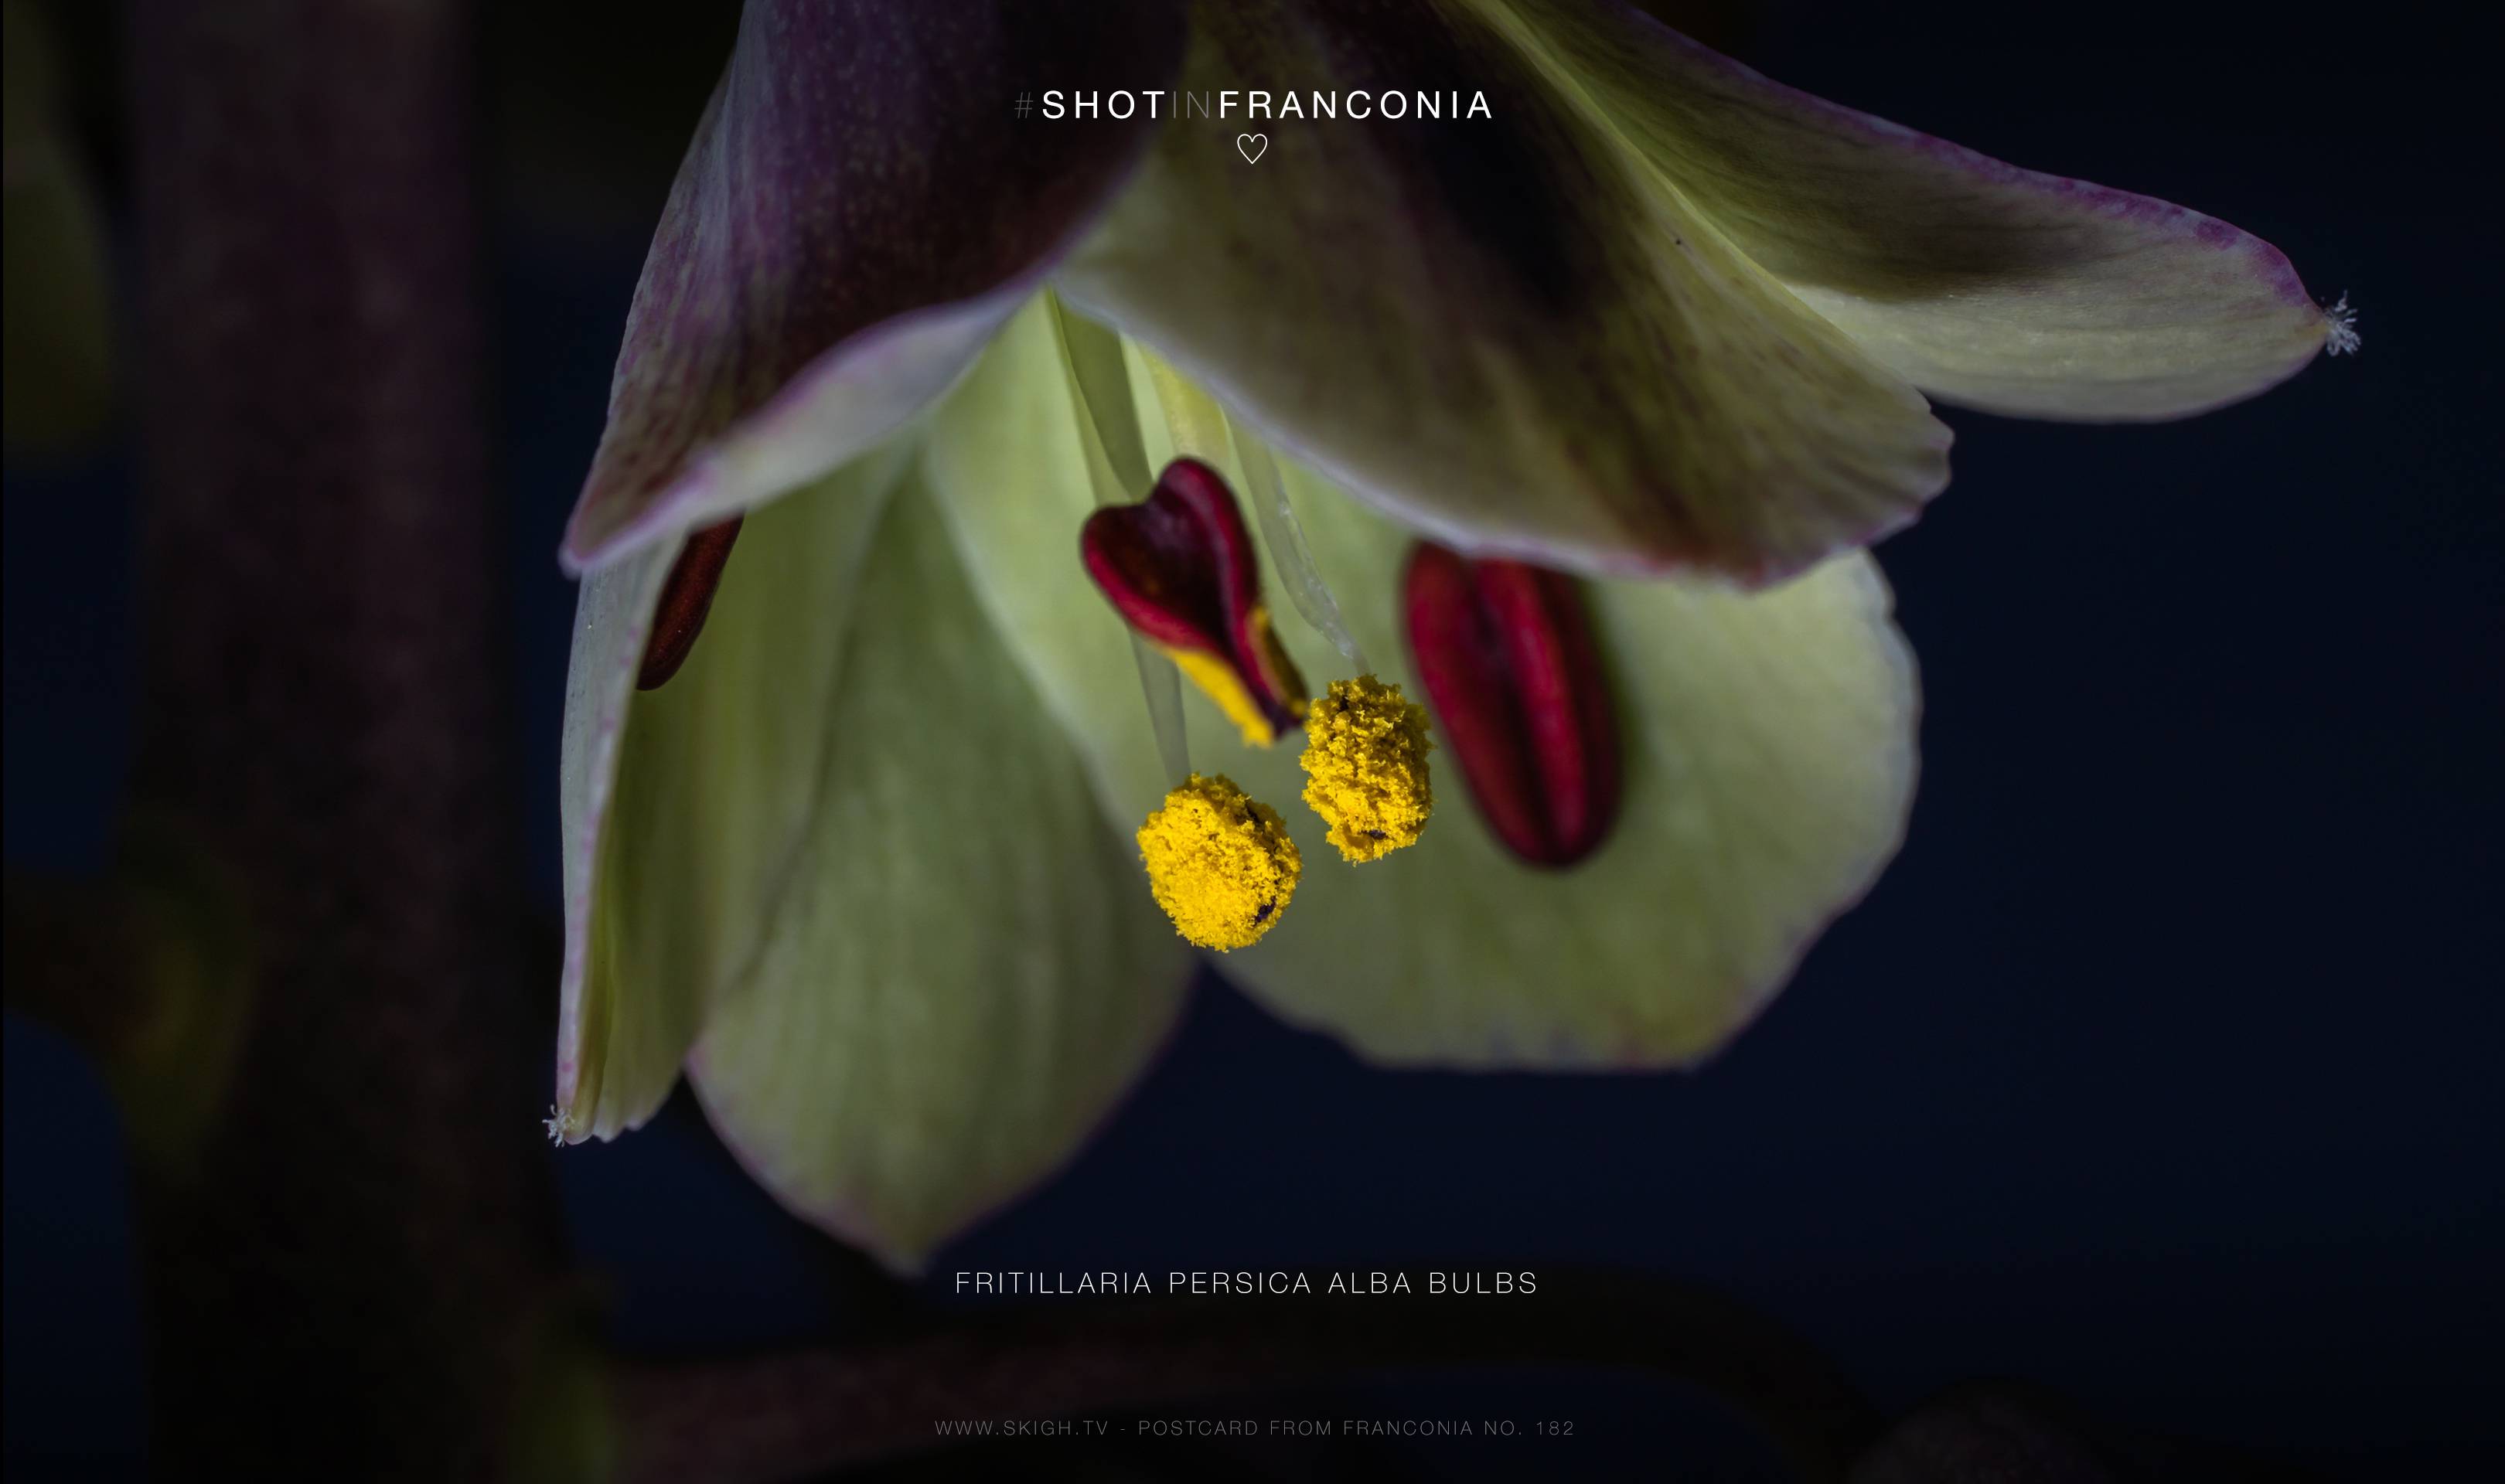 Fritillaria persica alba bulbs